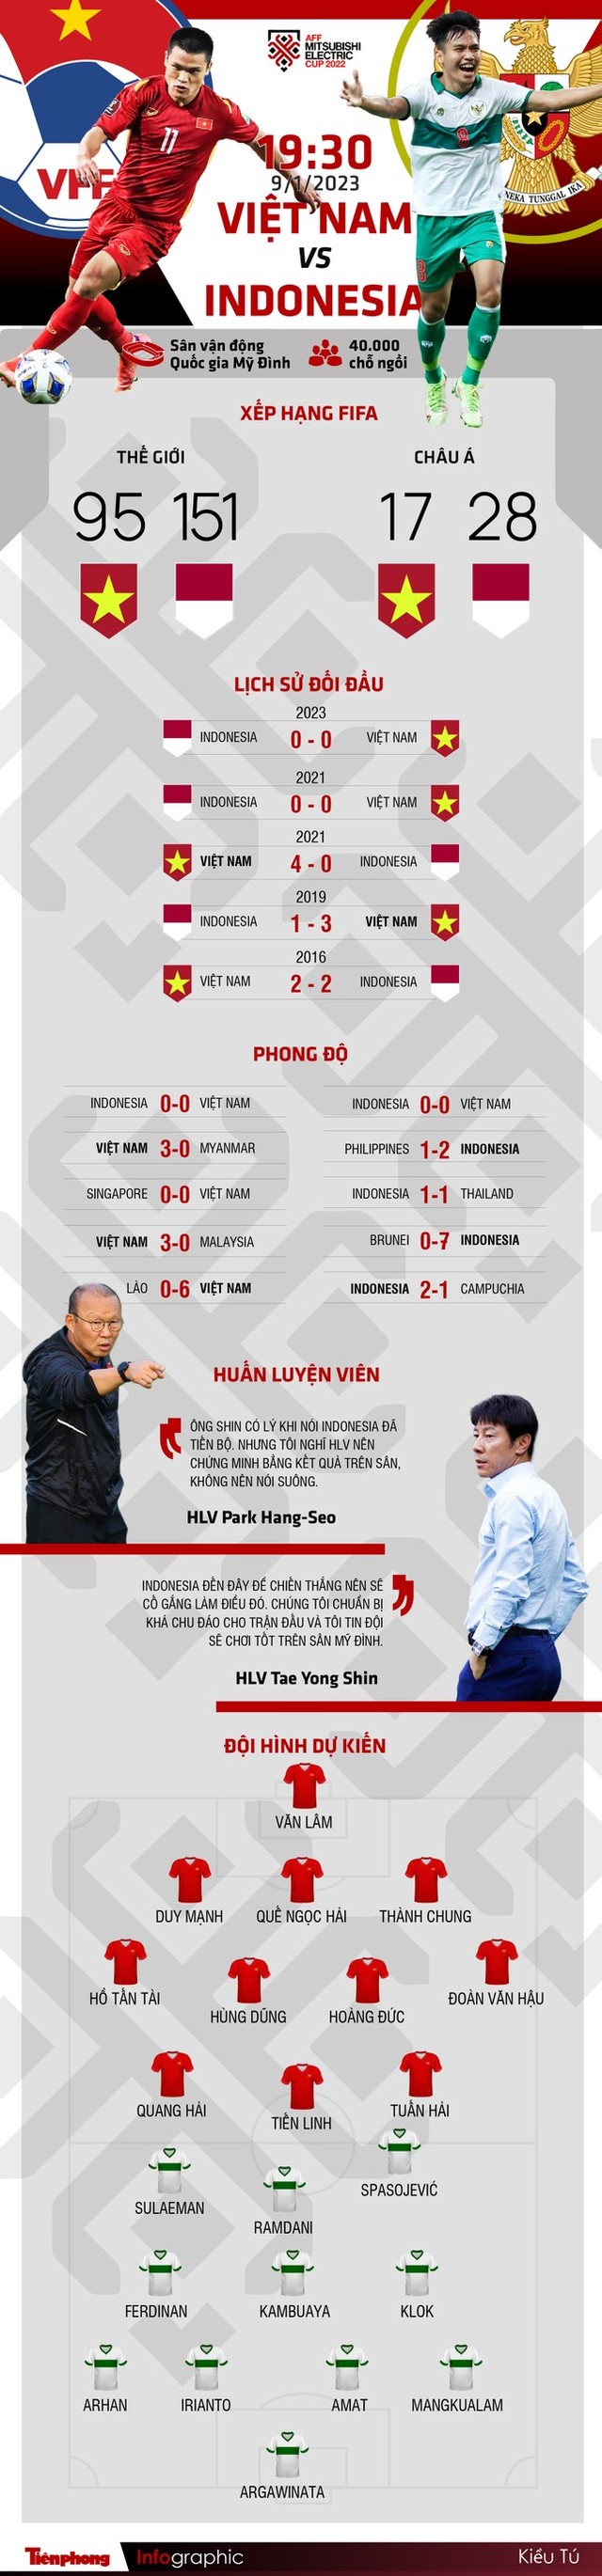 Lịch sử đối đầu Việt Nam vs Indonesia tại Mỹ Đình: Điểm tựa của HLV Park Hang-seo - Ảnh 1.